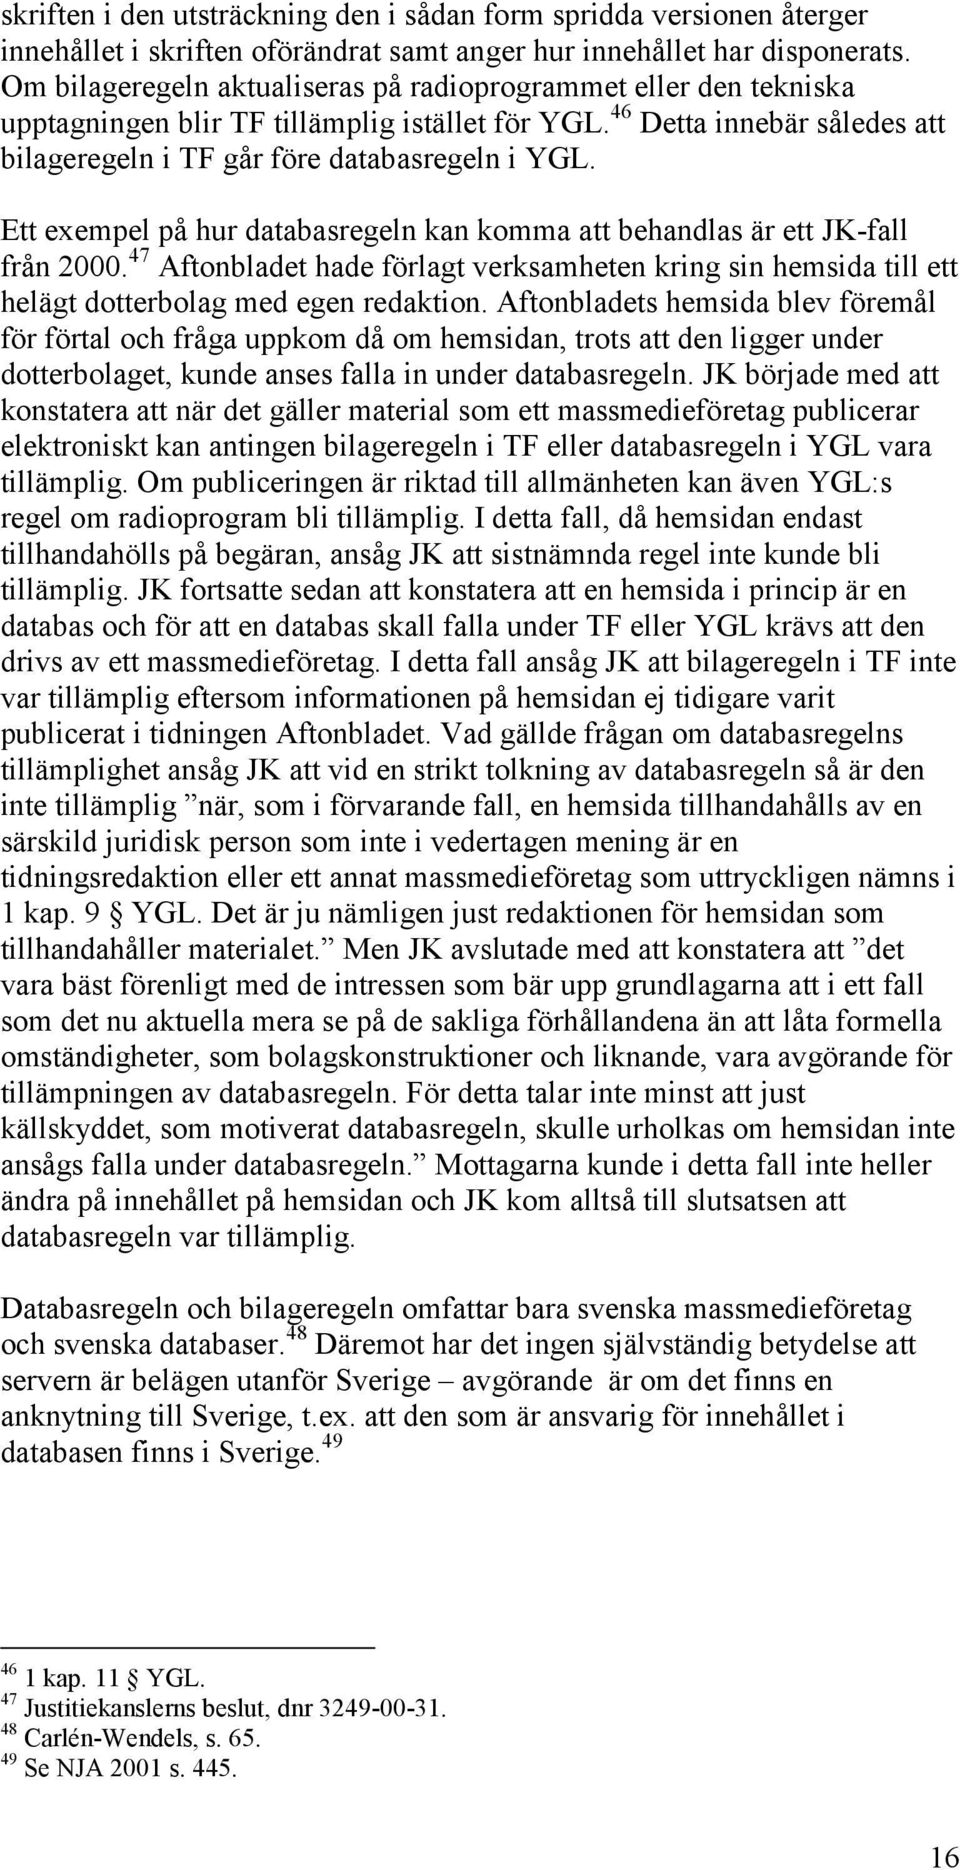 Ett exempel på hur databasregeln kan komma att behandlas är ett JK-fall från 2000. 47 Aftonbladet hade förlagt verksamheten kring sin hemsida till ett helägt dotterbolag med egen redaktion.